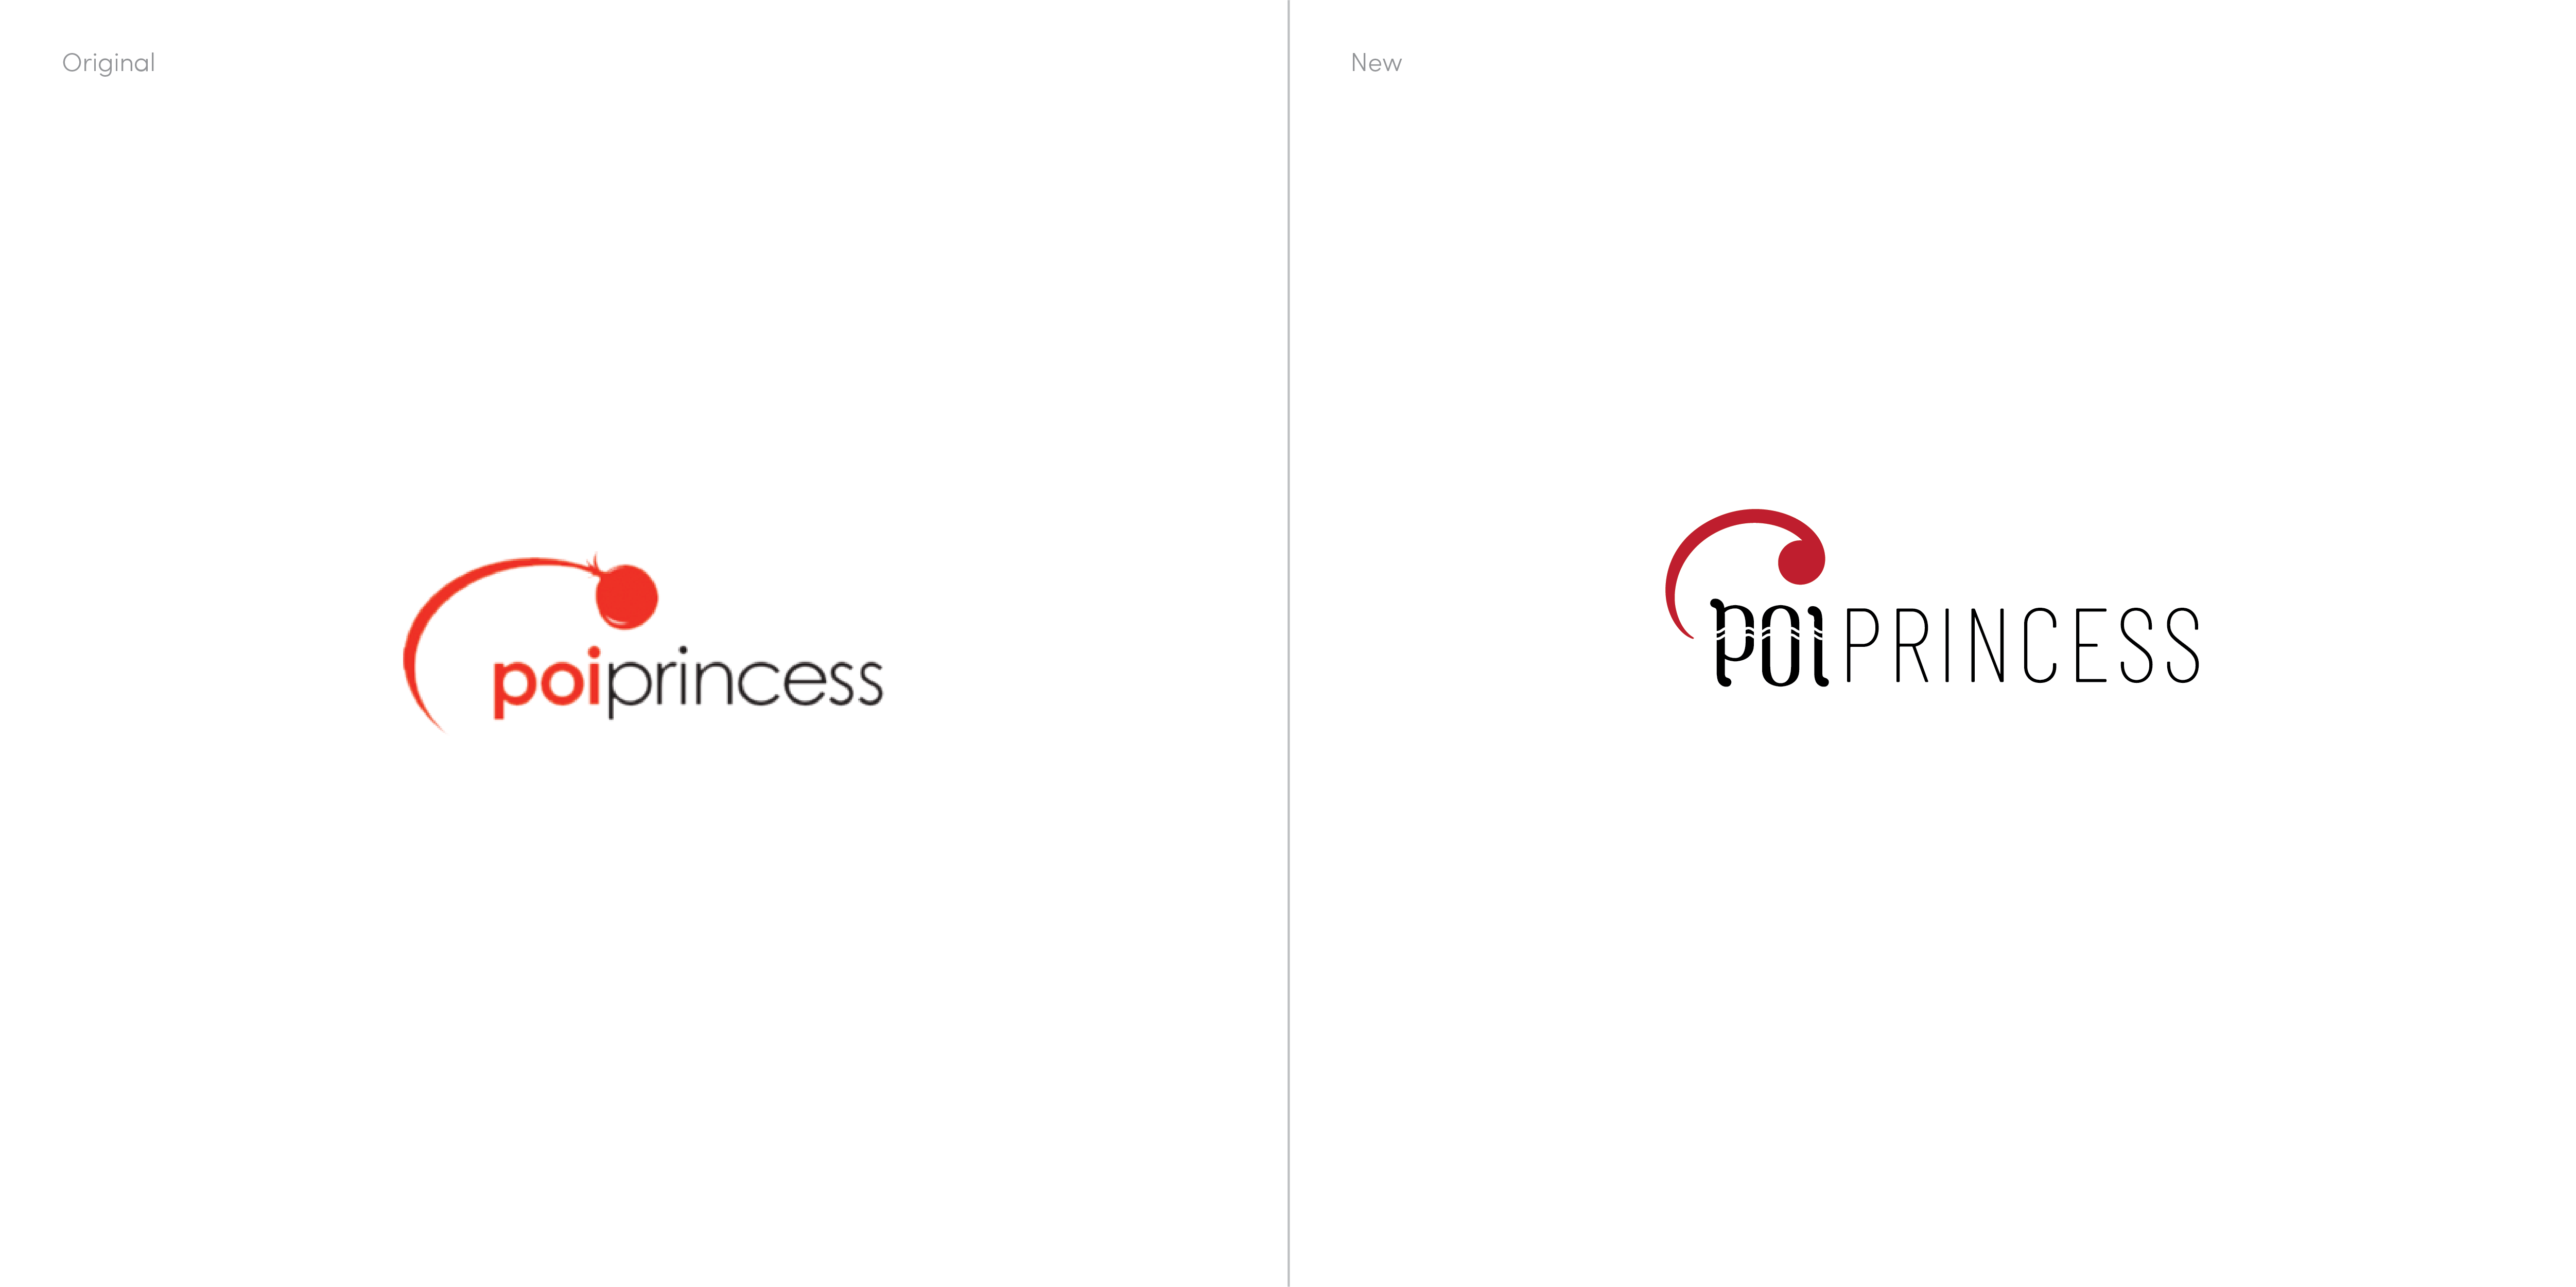 Poi Princess redesigned logo